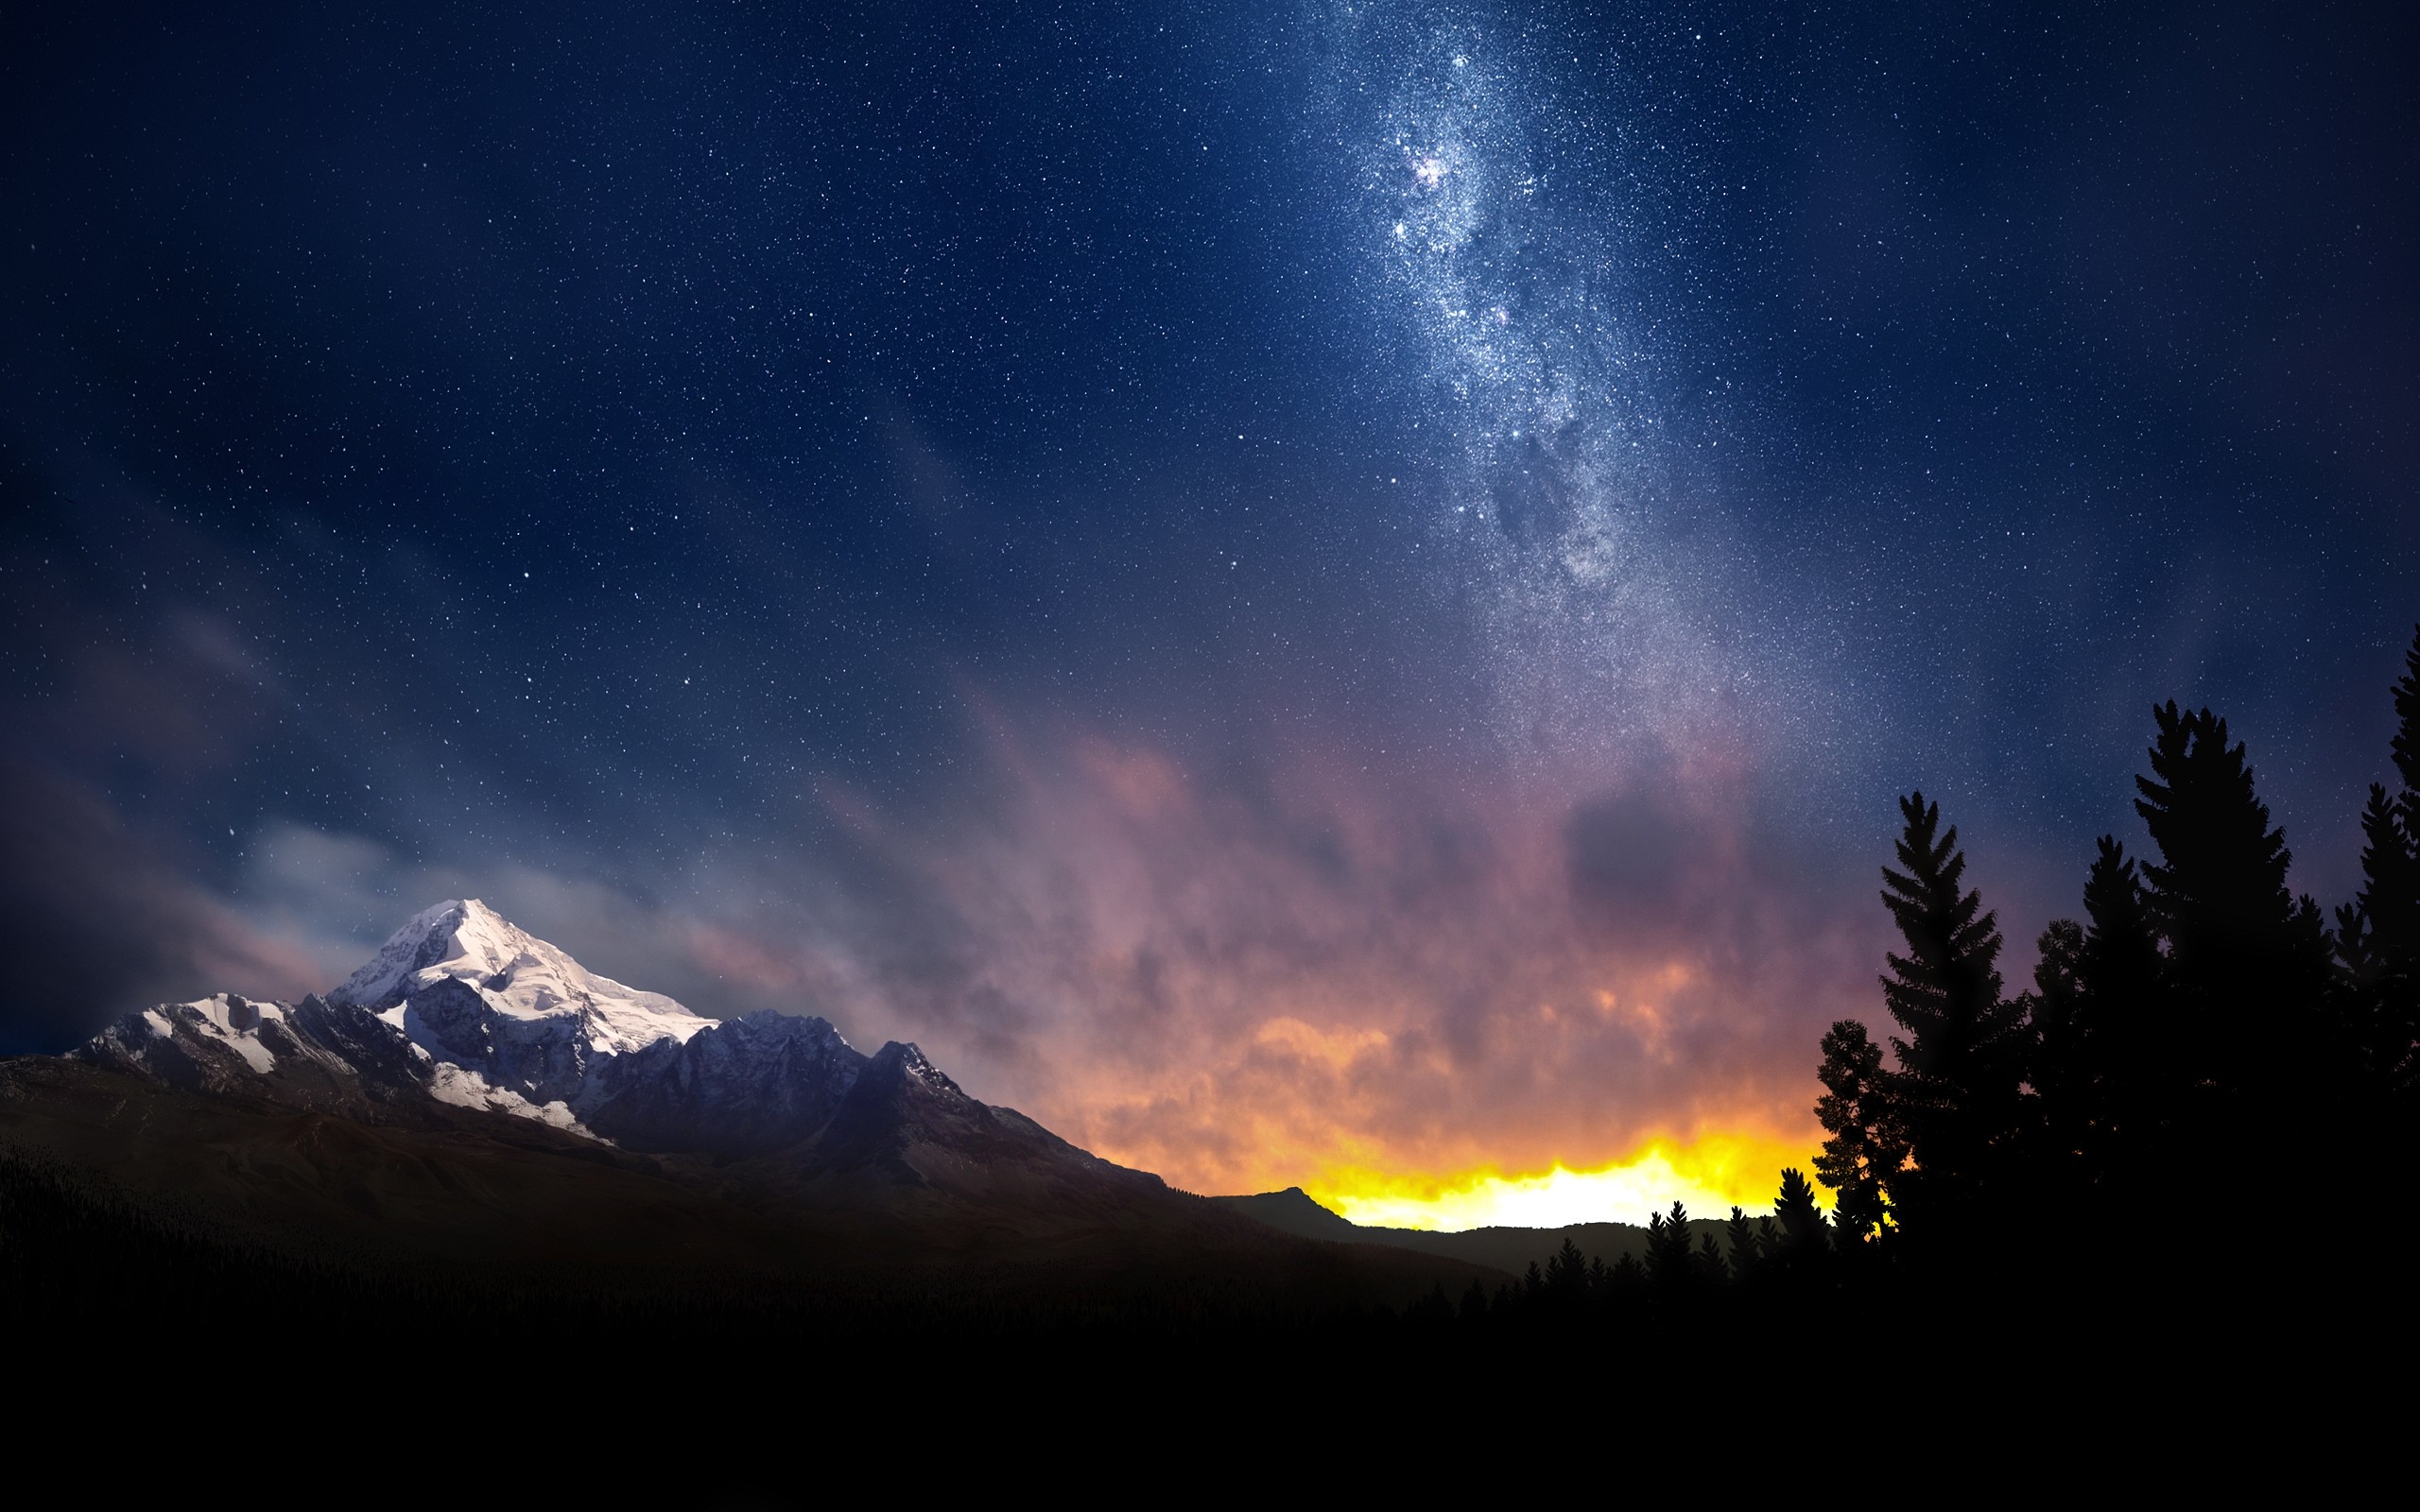 Hình nền bầu trời đêm ảnh nền bầu trời sao đẹp  Quantrimangcom  Hình nền  Bầu trời đêm Sword art online